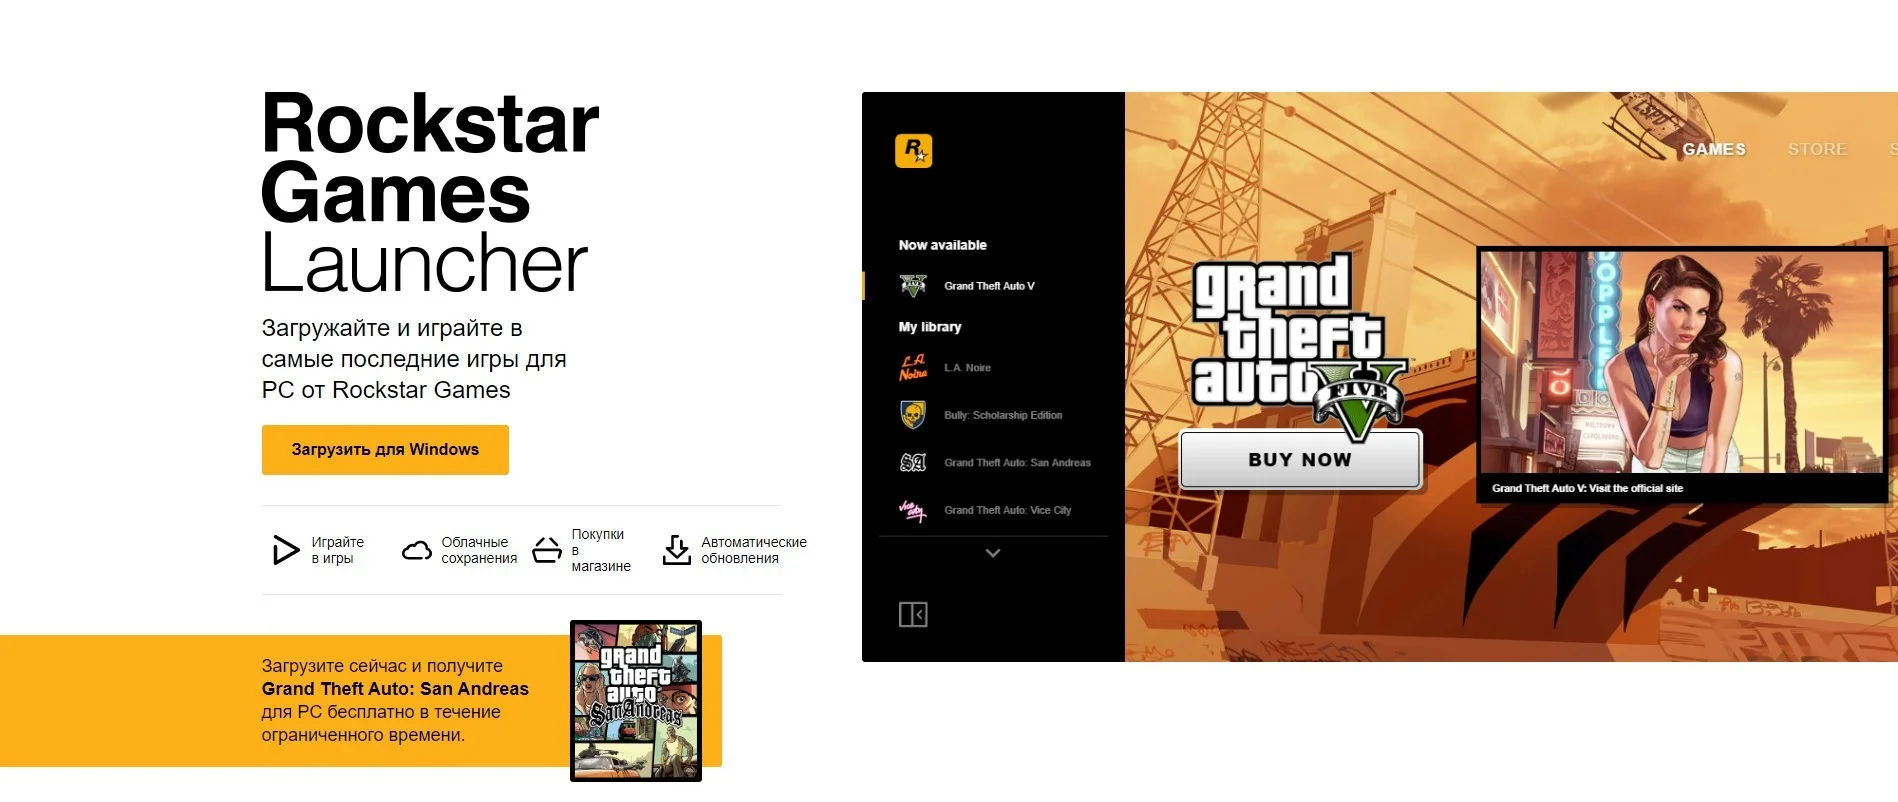 Rockstar выпустила свой лончер, где сейчас раздаёт Grand Theft Auto: San Andreas - фото 1